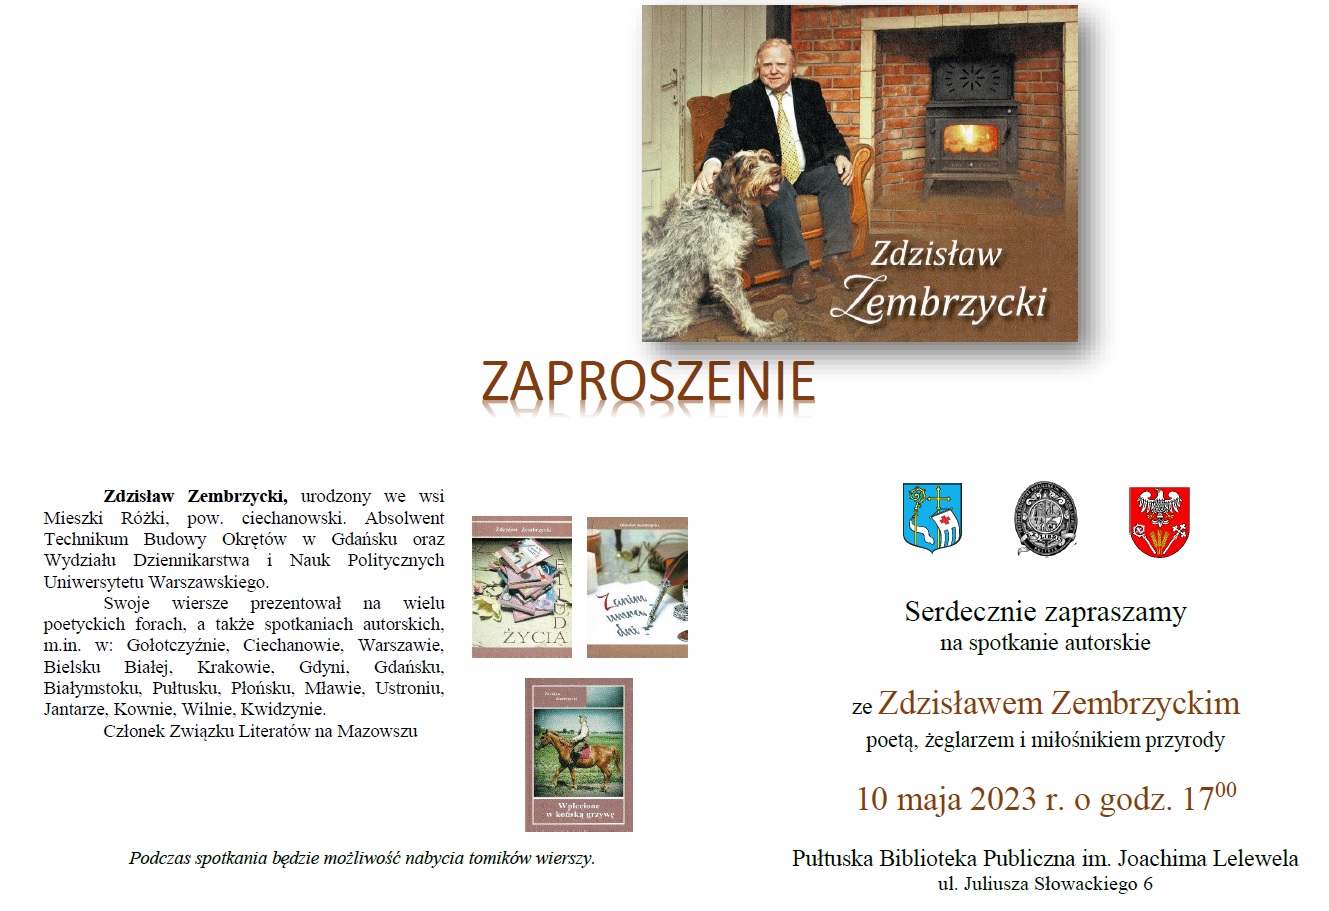 Zaproszenie na spotkanie autorskie ze Zdzisławem Zembrzyckim